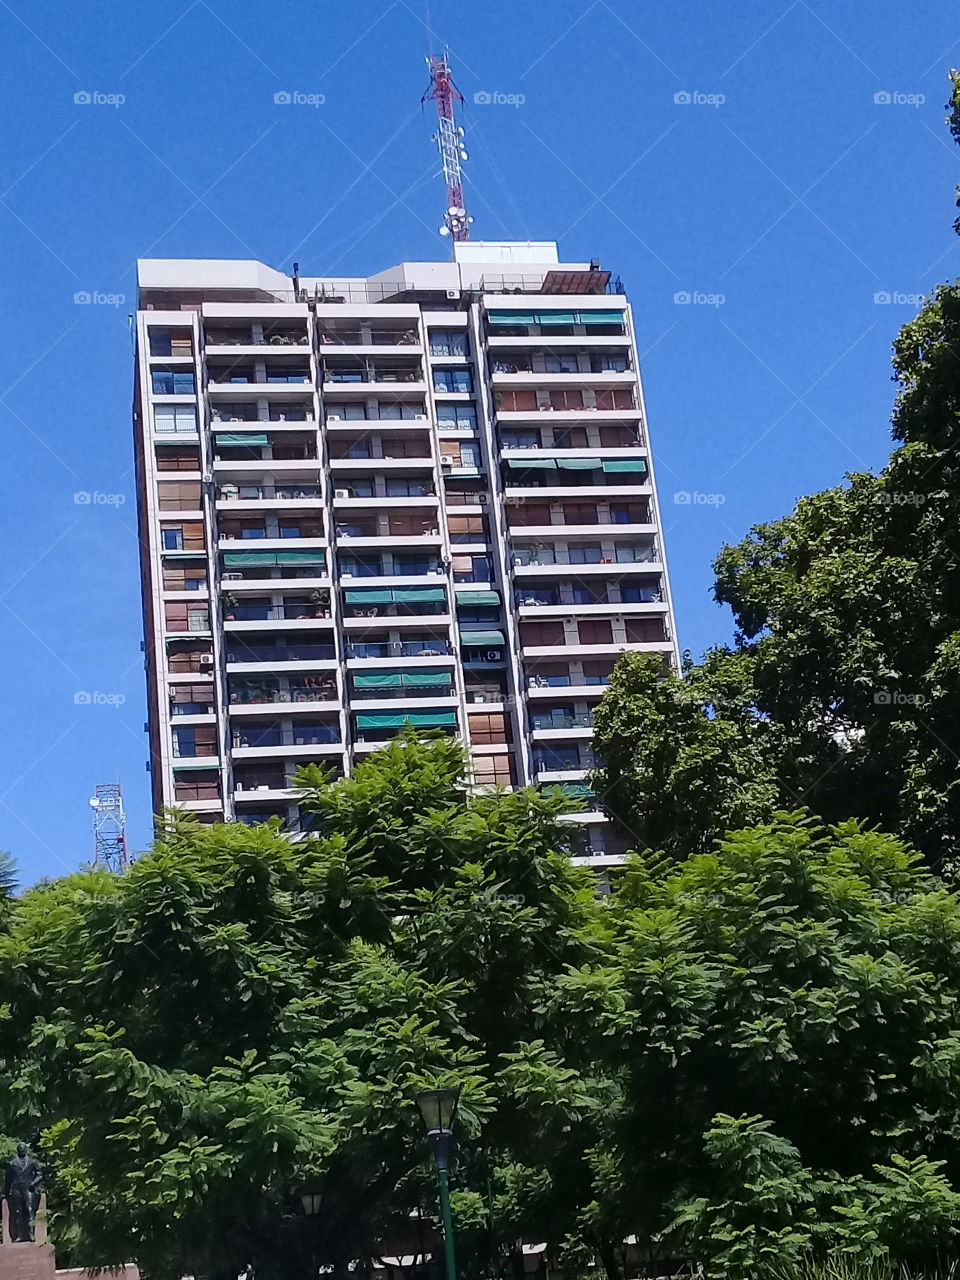 imagen de un moderno edificio de departamentos destacando entre las copas de árboles y recortado contra un cielo de verano despejado,ubicado en una céntrica avenida de la ciudad de Buenos Aires.